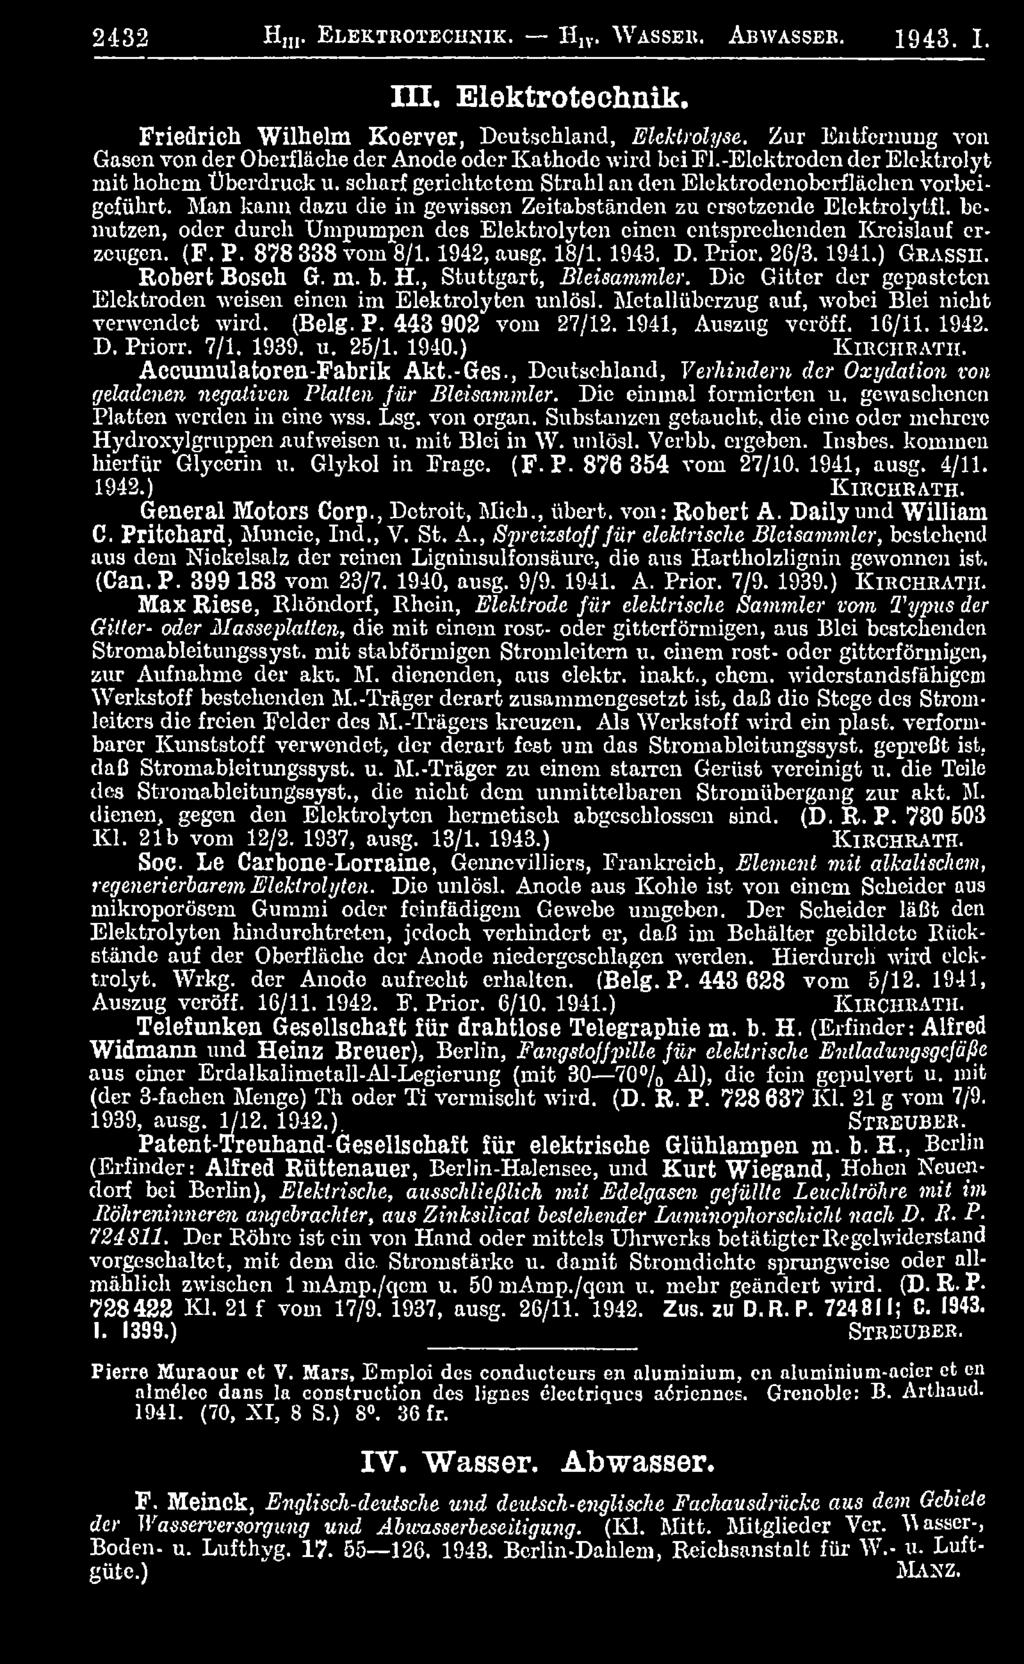 Metallüberzug auf, wobei Blei nicht verwendet wird. (Belg. P. 443 902 vom 27/12. 1941, Auszug veröff. 16/11. 1942. D. Priorr. 7/1. 1939. u. 25/1. 1940.) K ir c h r a t h. Accumulatoren-Fabrik Akt.